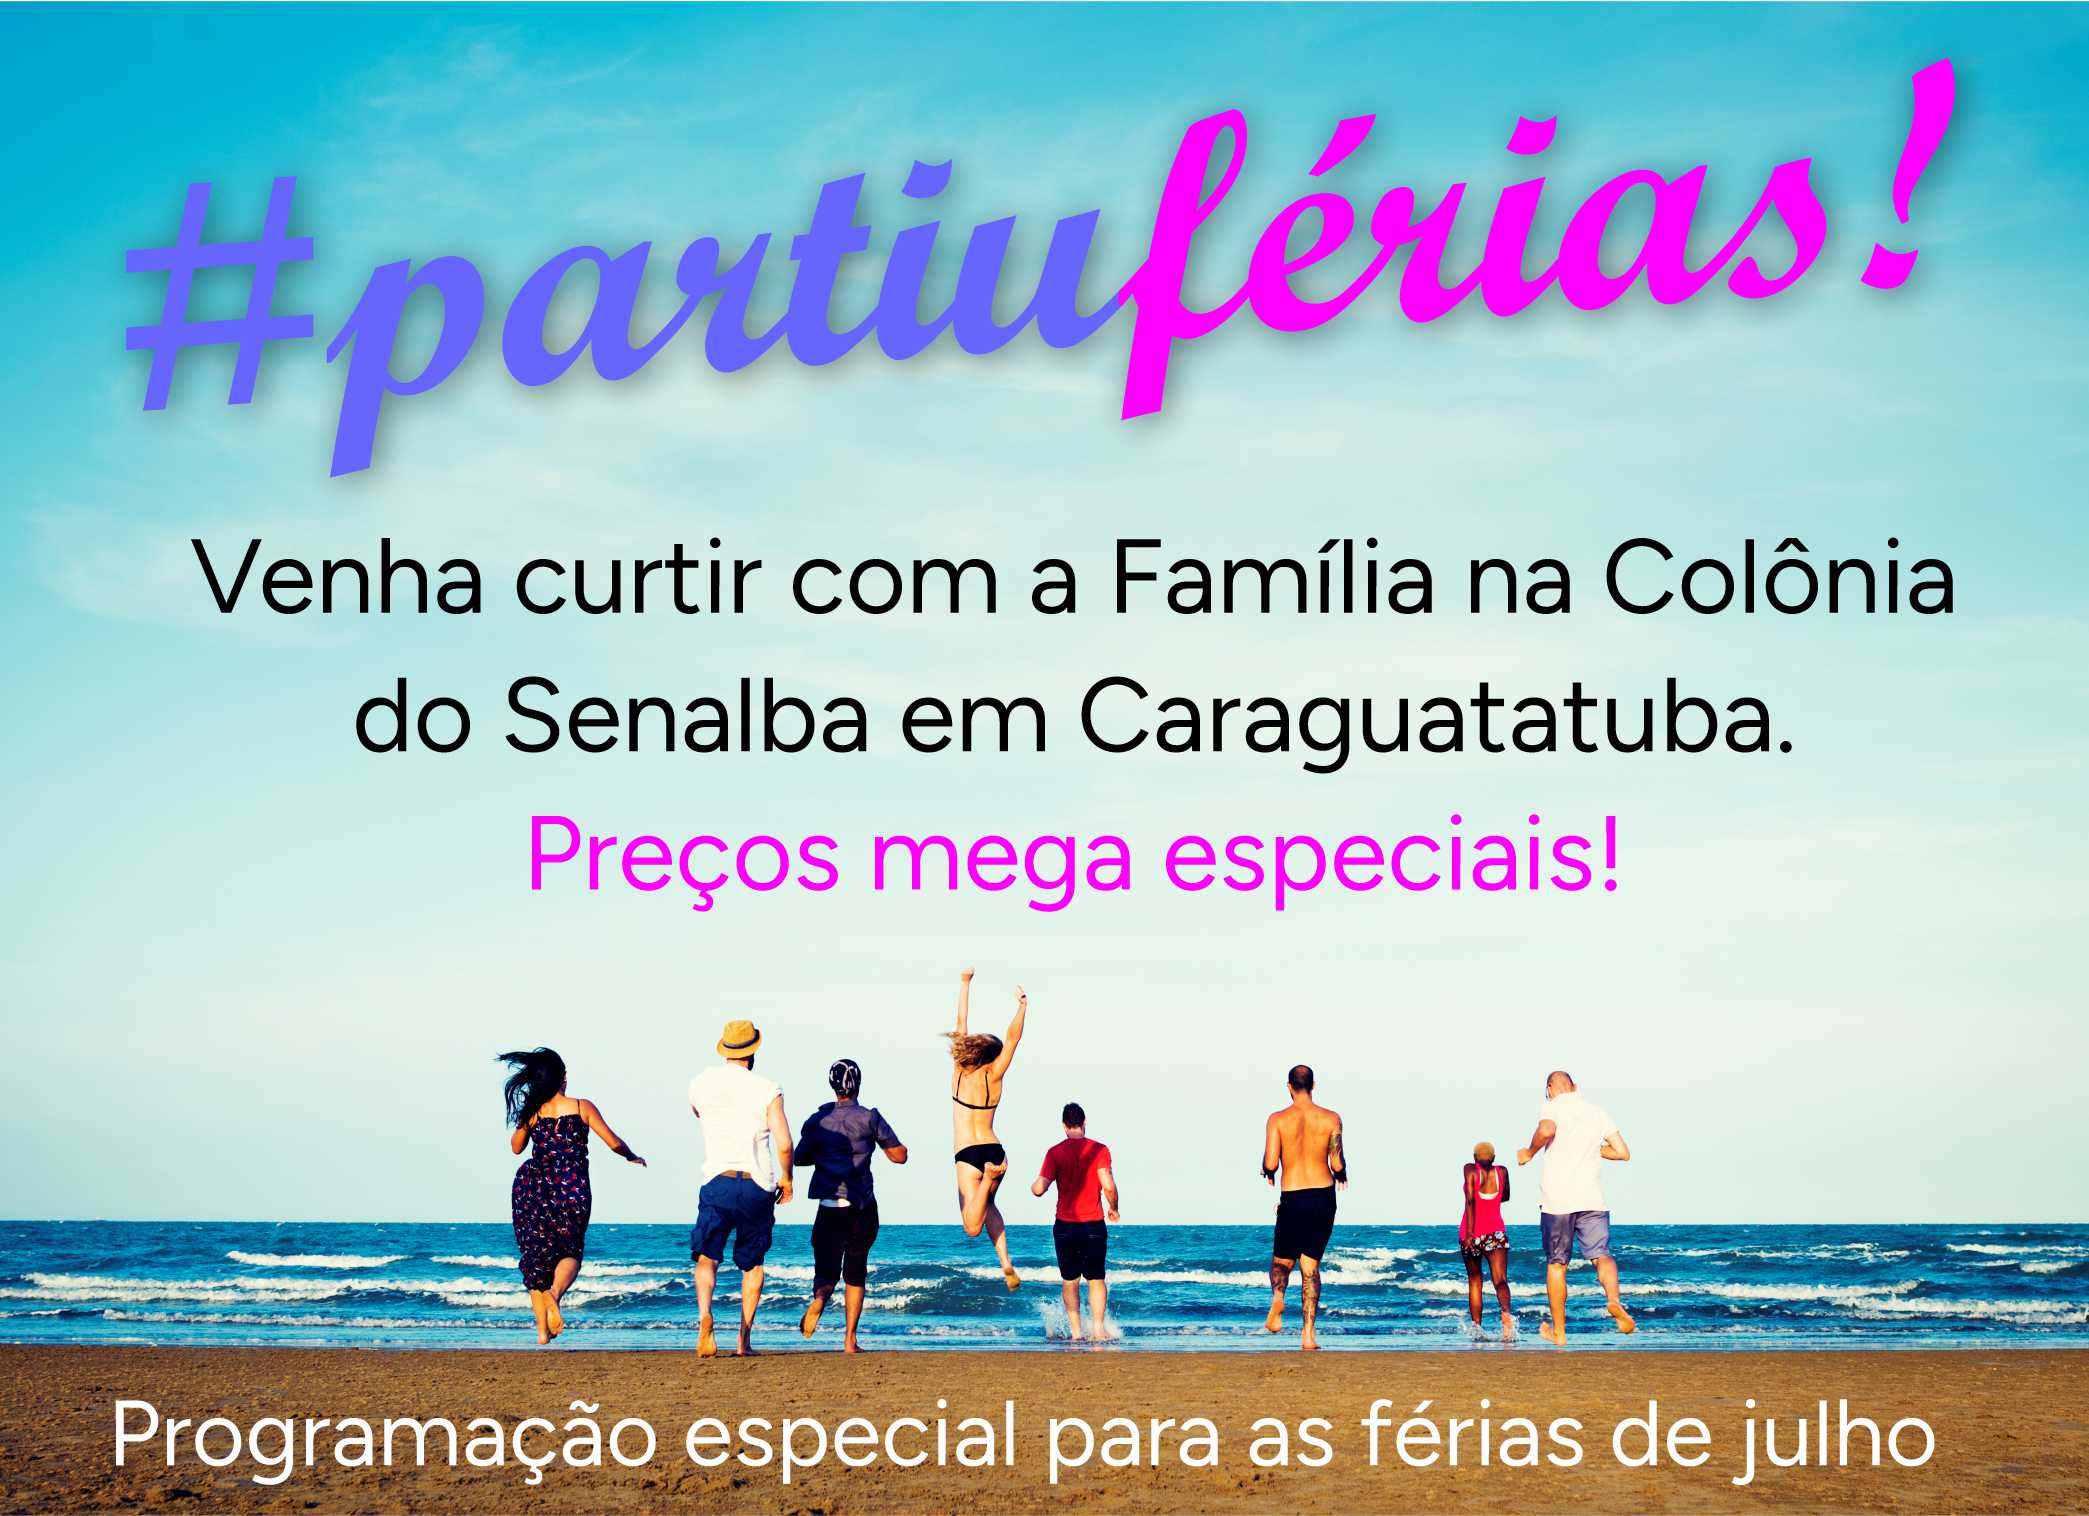 #PARTIUFÉRIAS - Curta as férias de julho com a Família na Colônia do Senalba em Caraguatatuba. Confira a promoção especial!